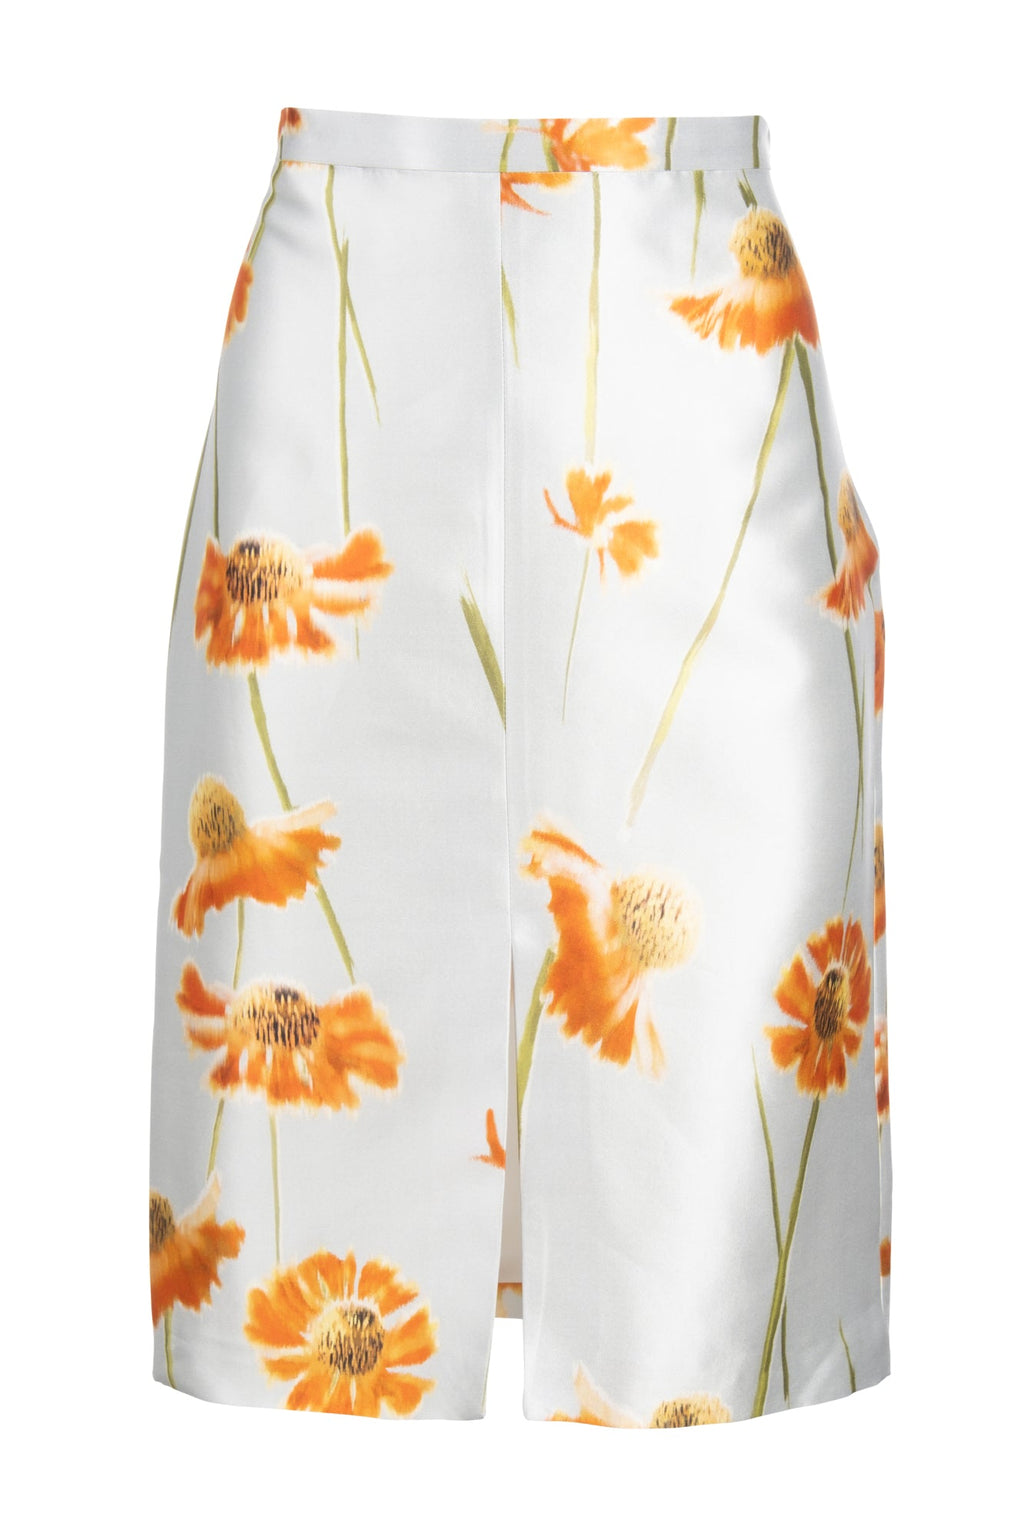 Slit Front Pencil Skirt - Tangerine Spanish Poppy